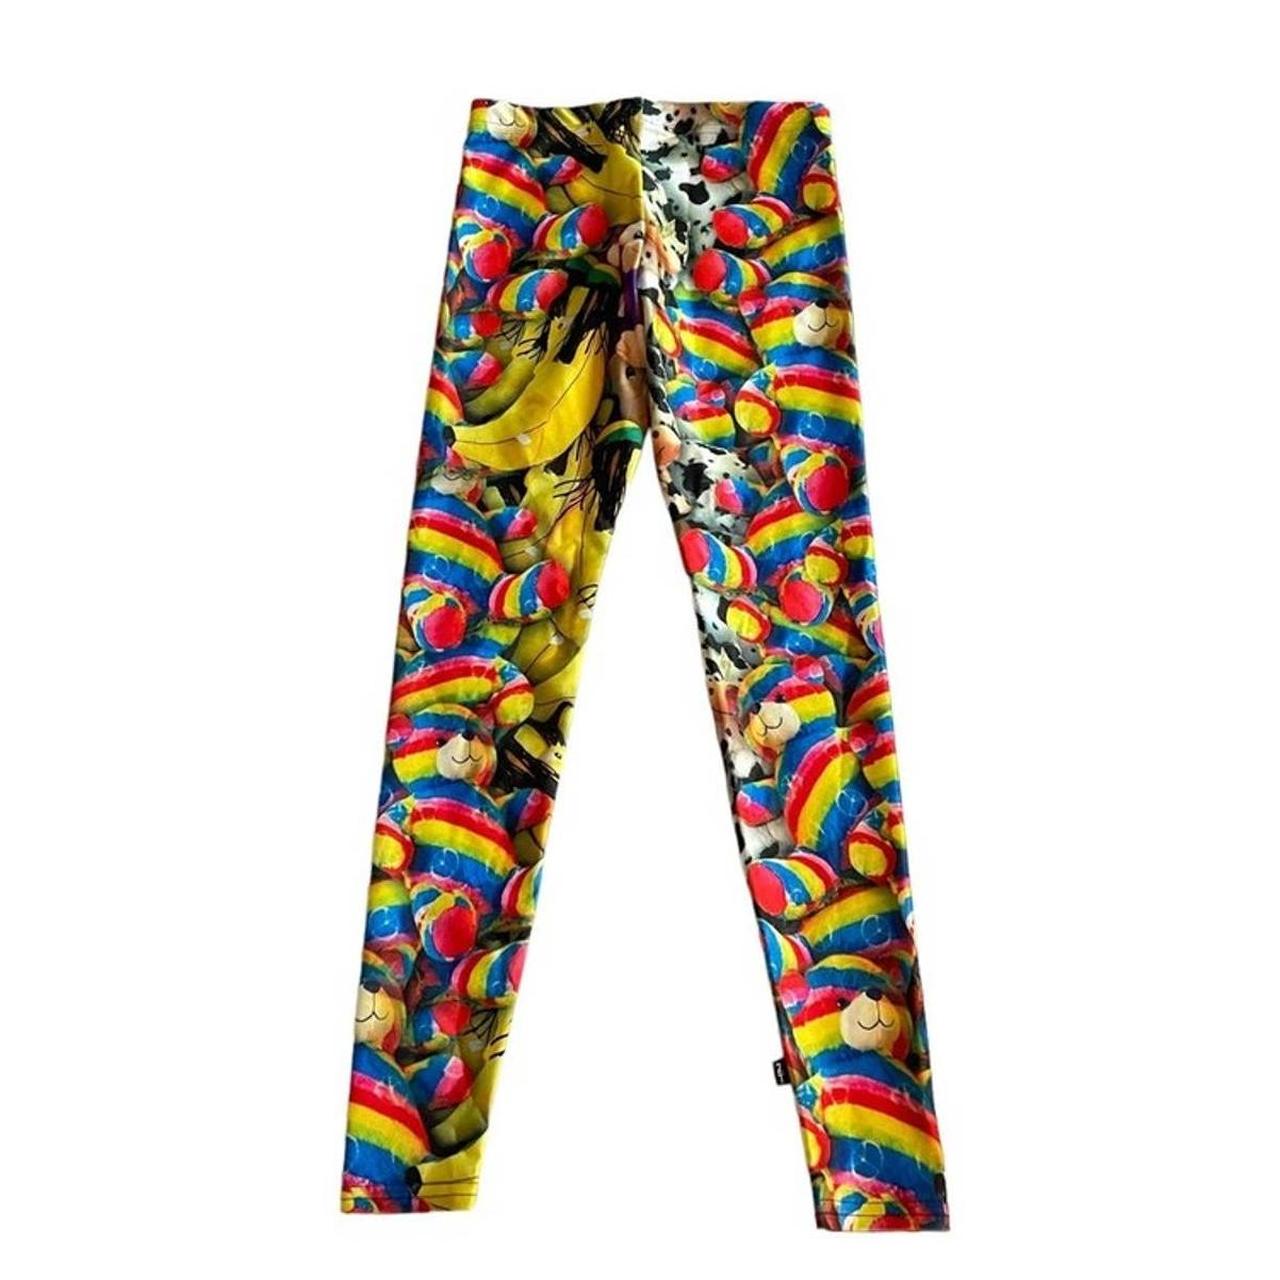 Zara Terez circus leggings super colorful girls size - Depop